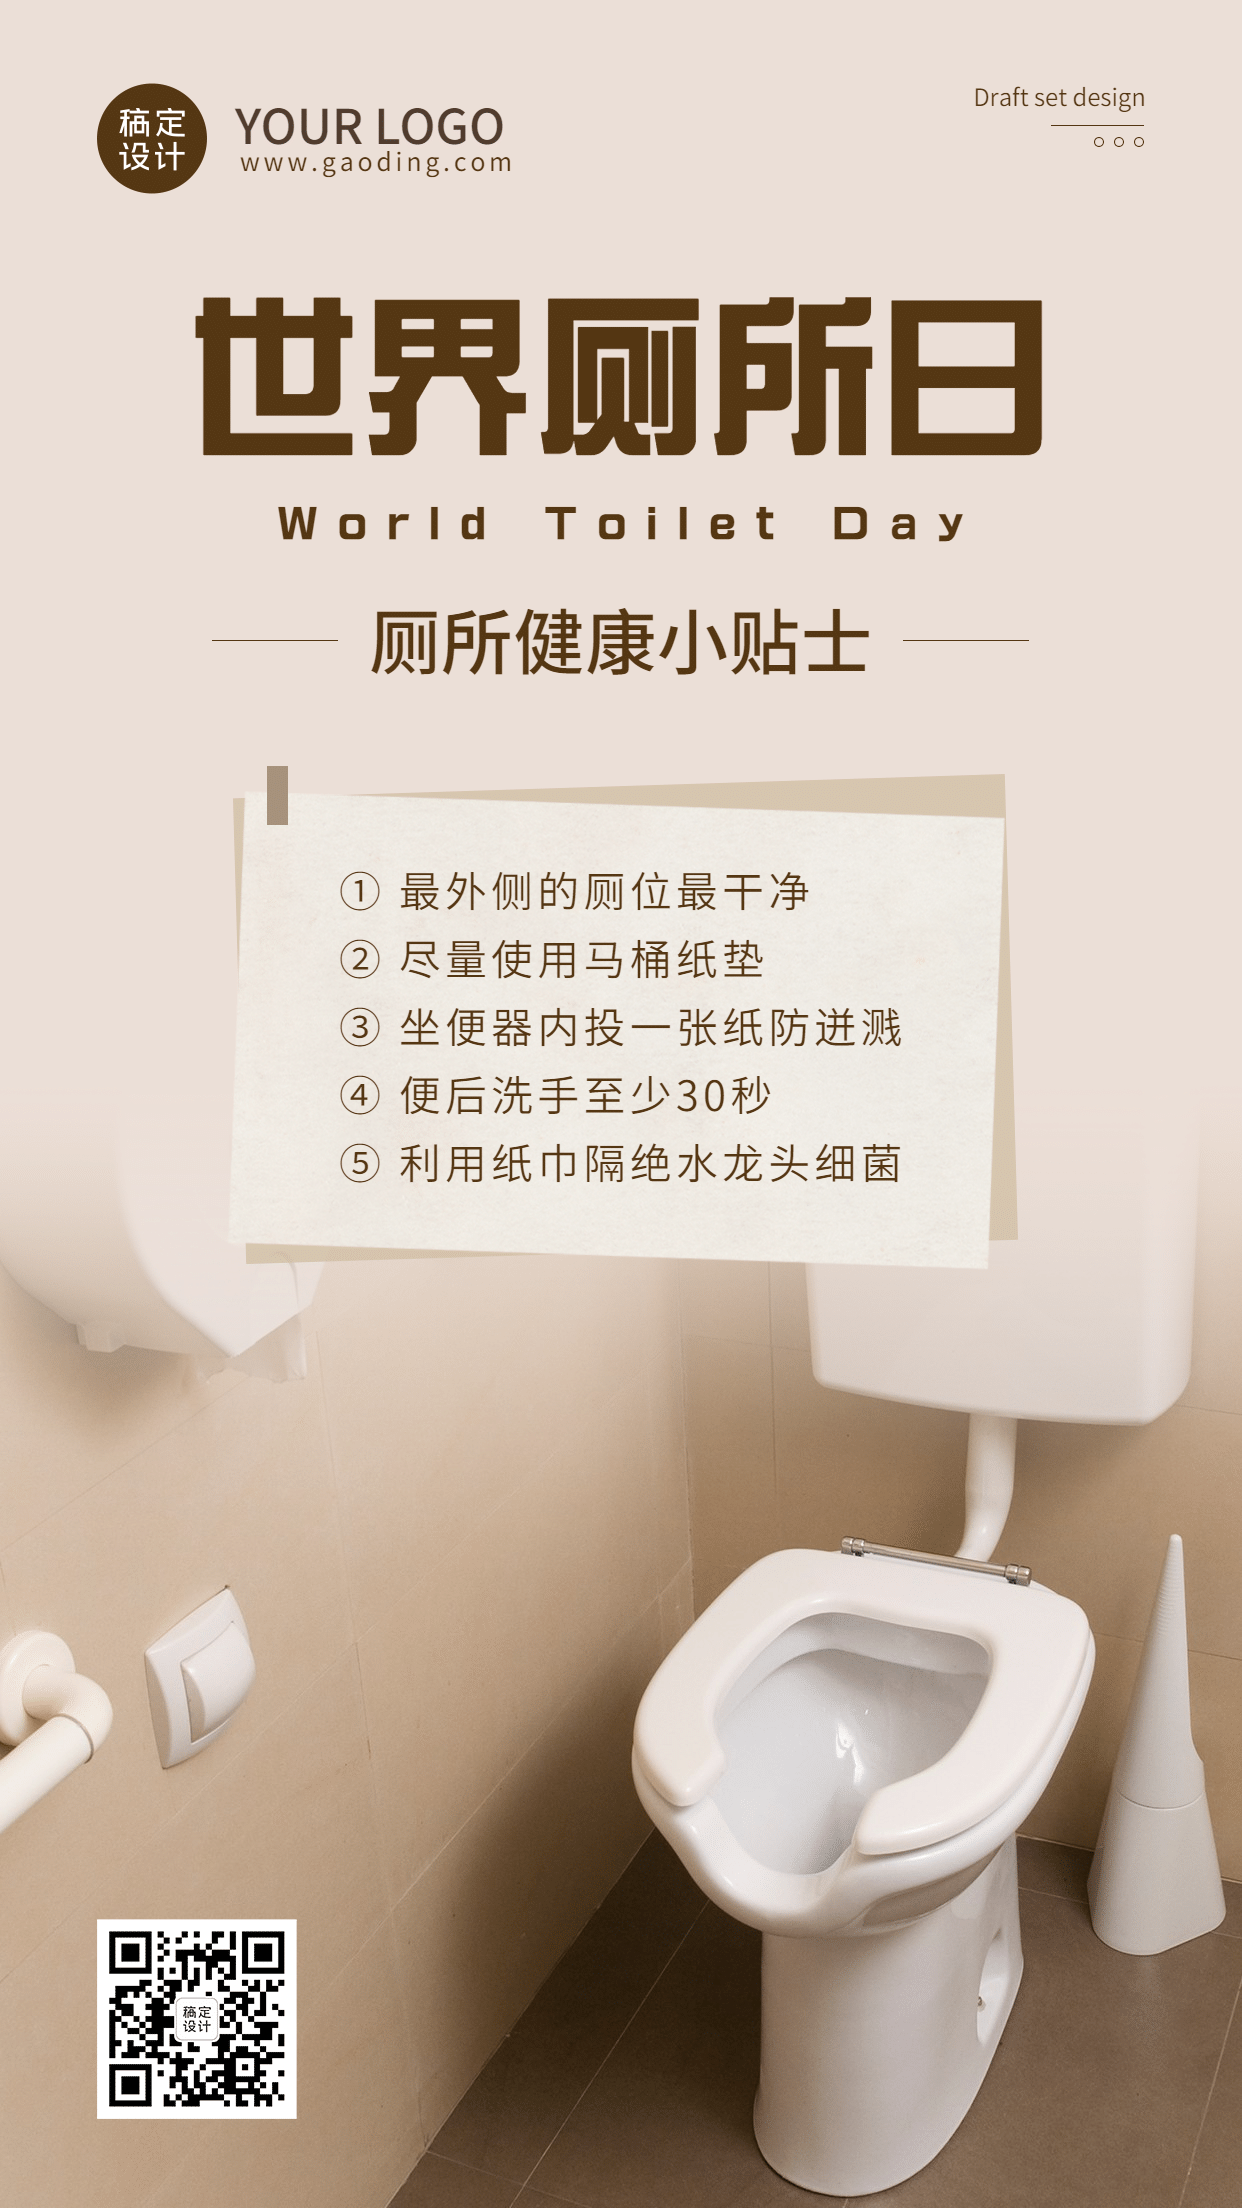 世界厕所日文明如厕公共卫知识科普实景生手机海报